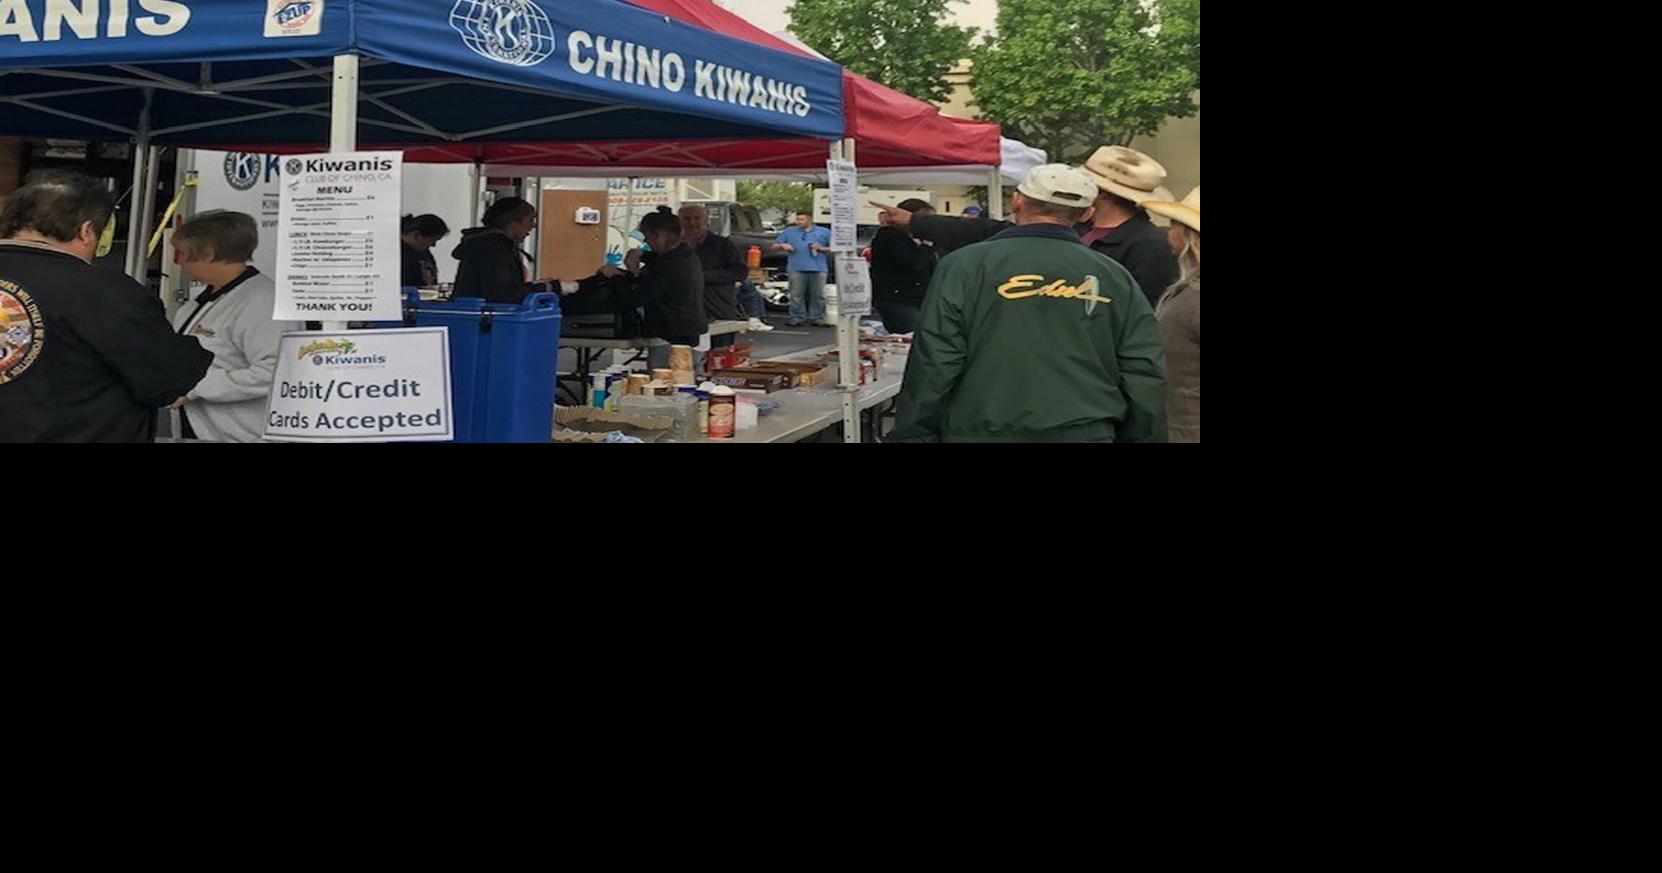 Chino Kiwanis Club canopies stolen at Chino City Hall | News